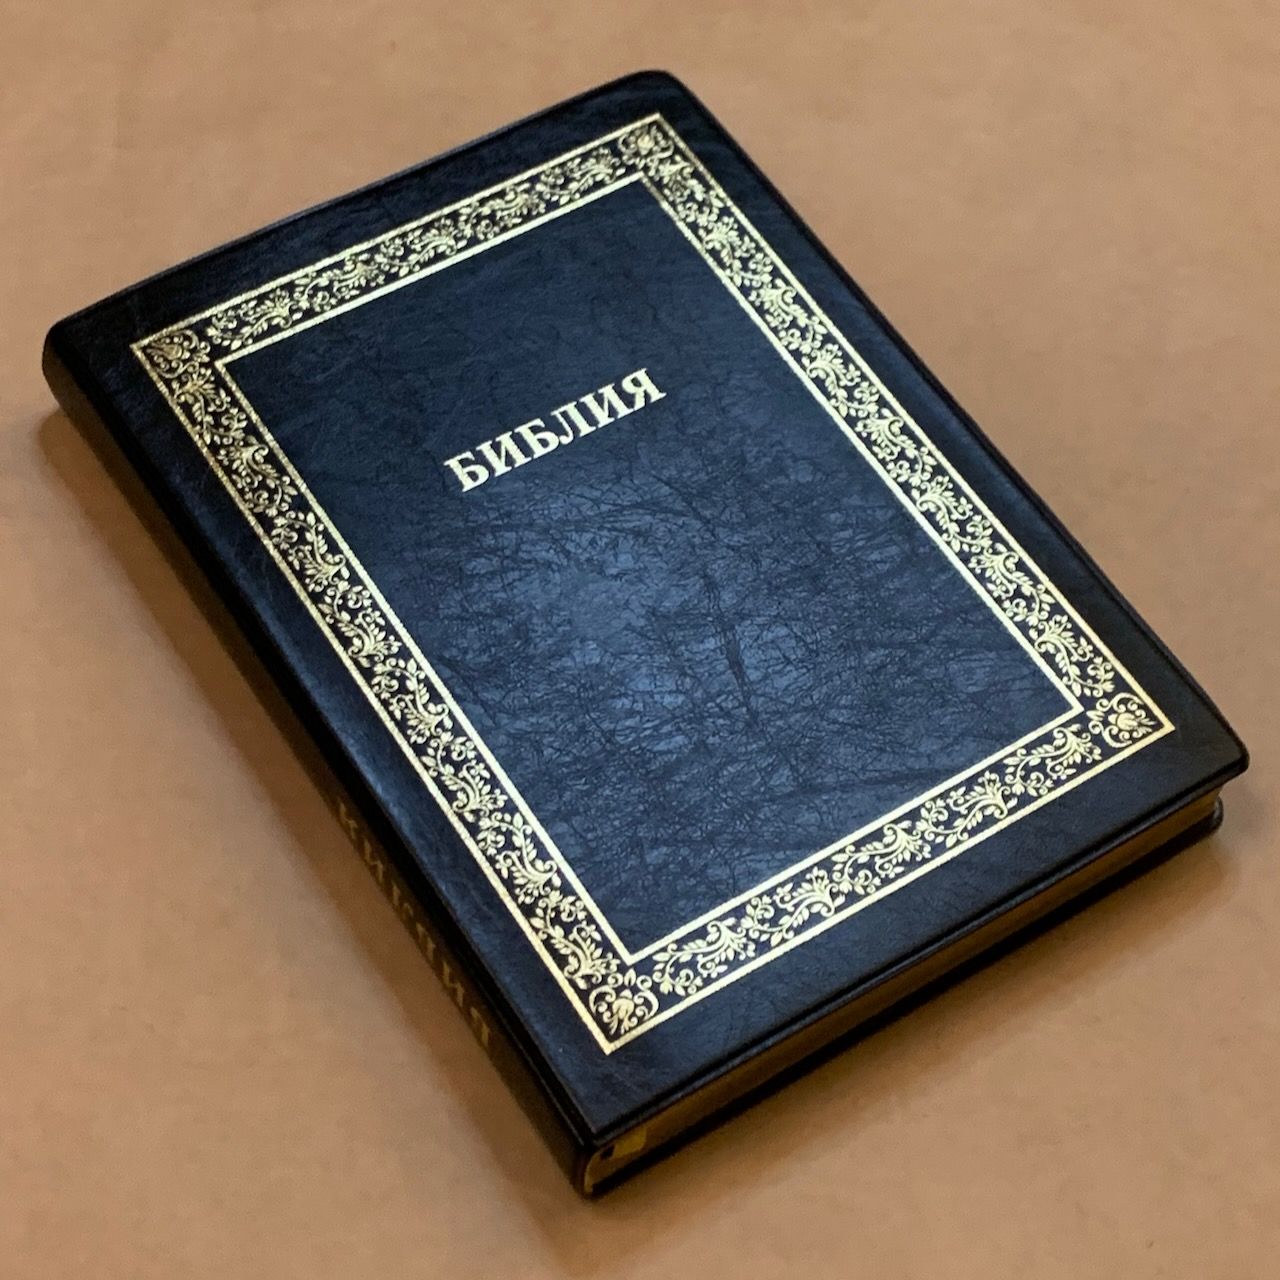 Библия 076TI код A1,  дизайн "золотая рамка растительный орнамент",  цвет черный, переплет из искусственной кожи с индексами